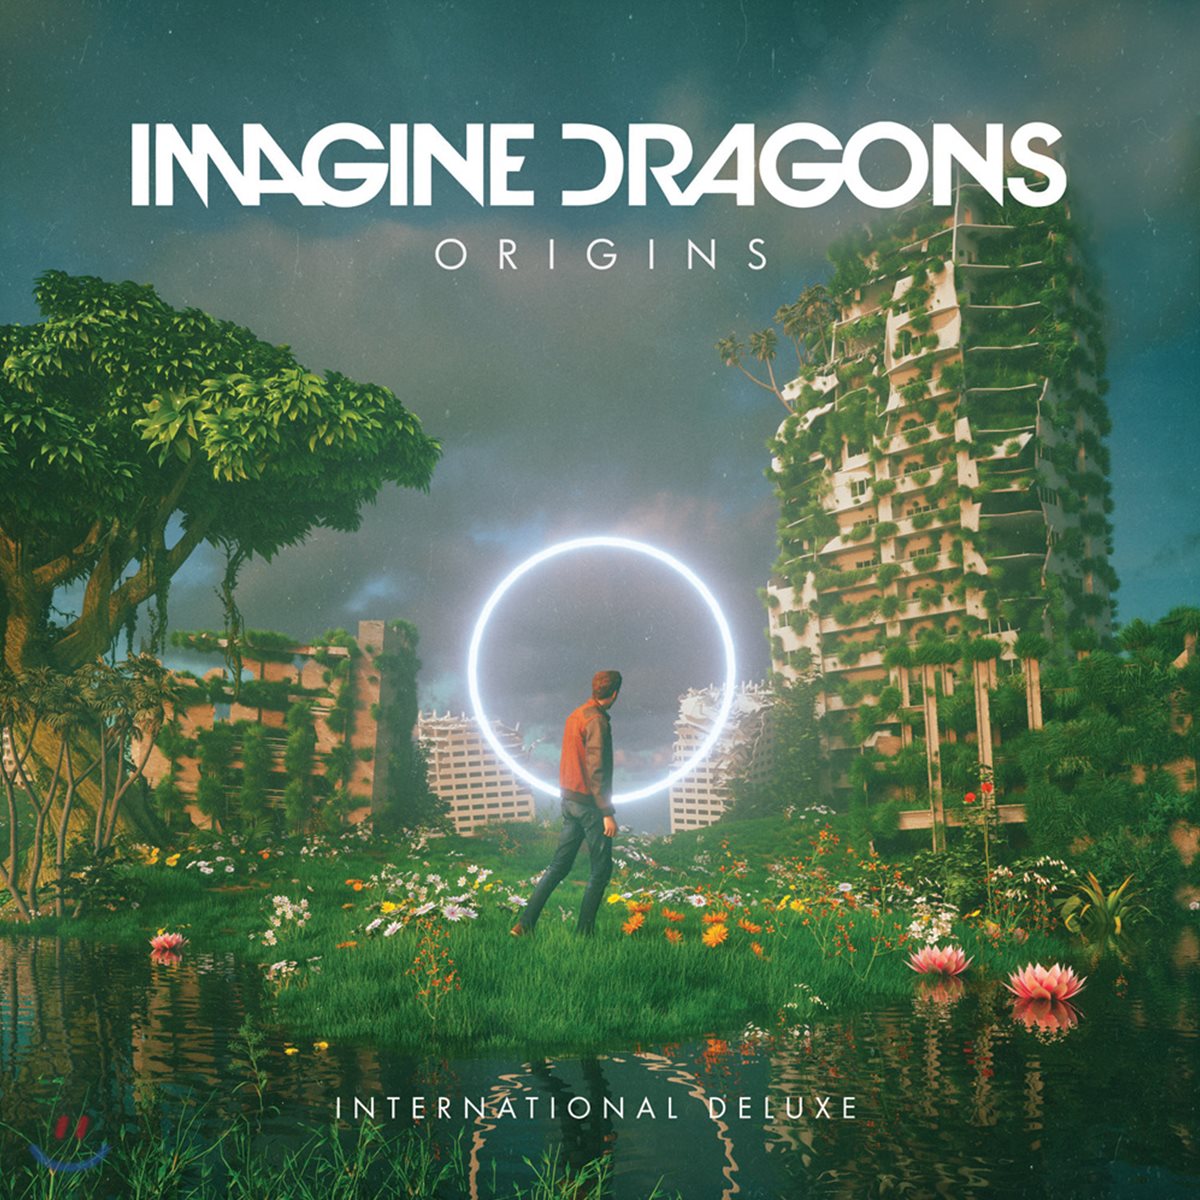 Imagine Dragons - Origins ì´ë§¤ì§ ëëê³¤ì¤ ì ê· 4ì§